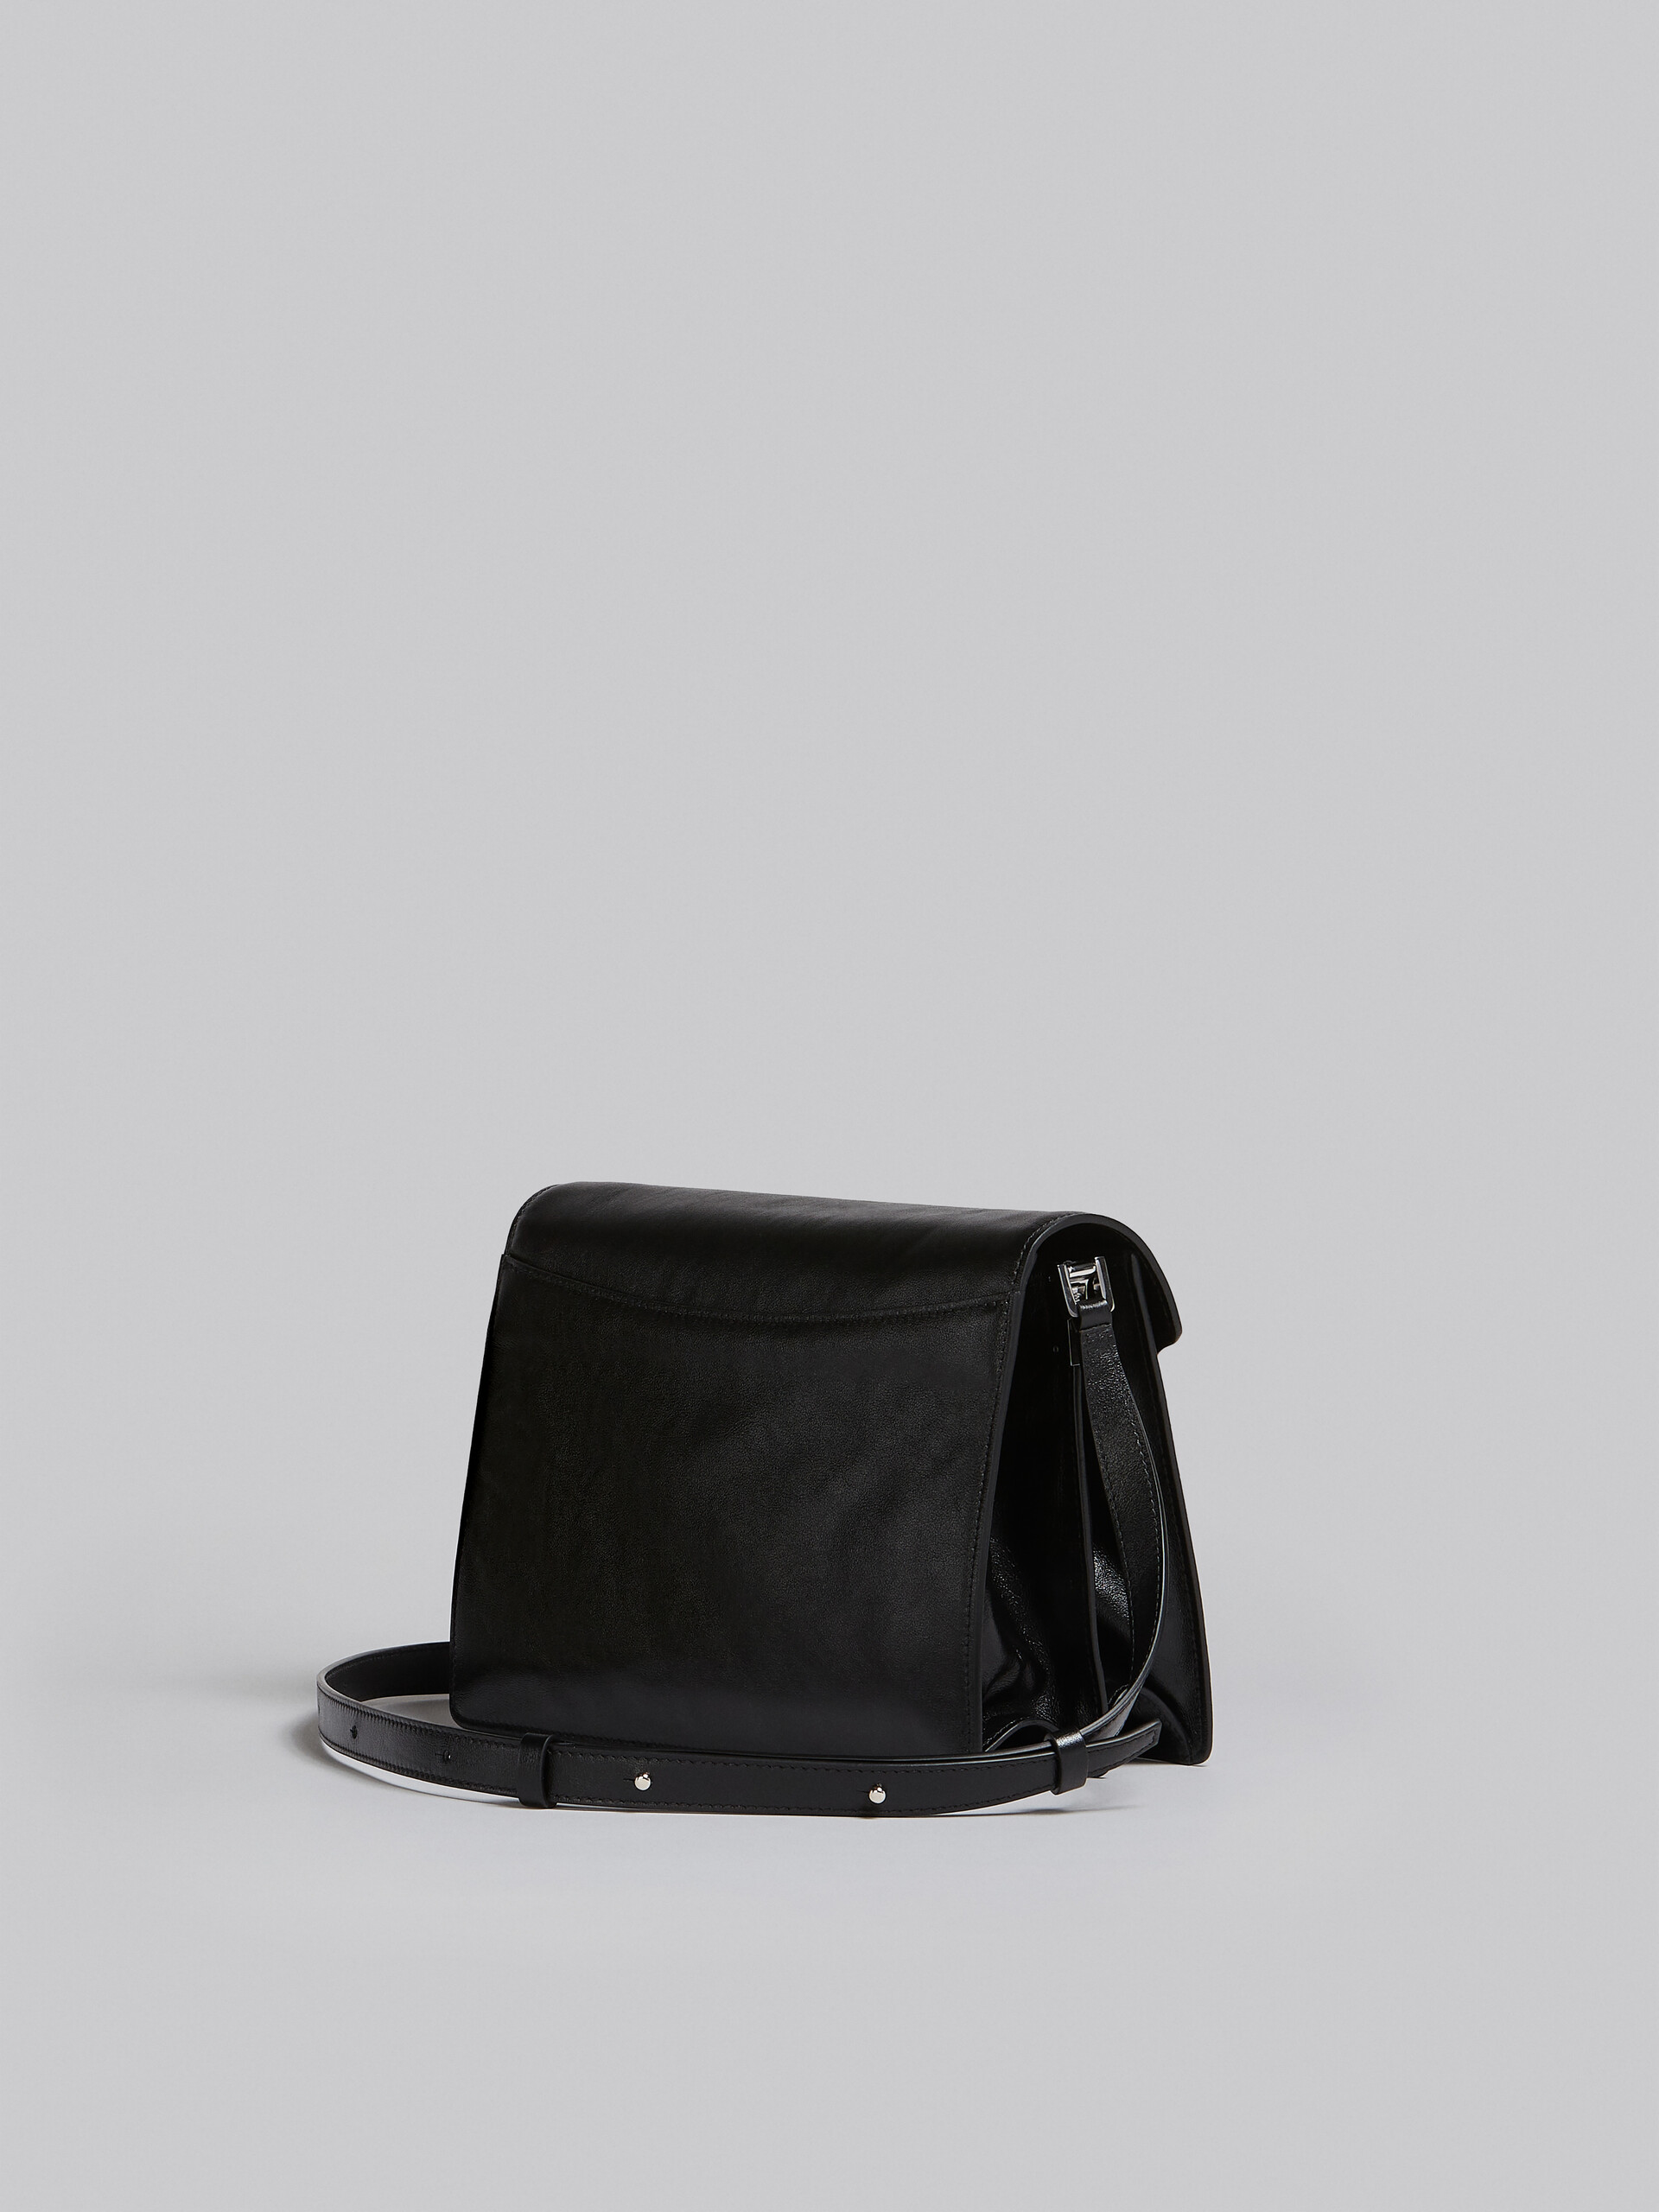 Trunk Soft Bag Grande in pelle nera - Borse a spalla - Image 3